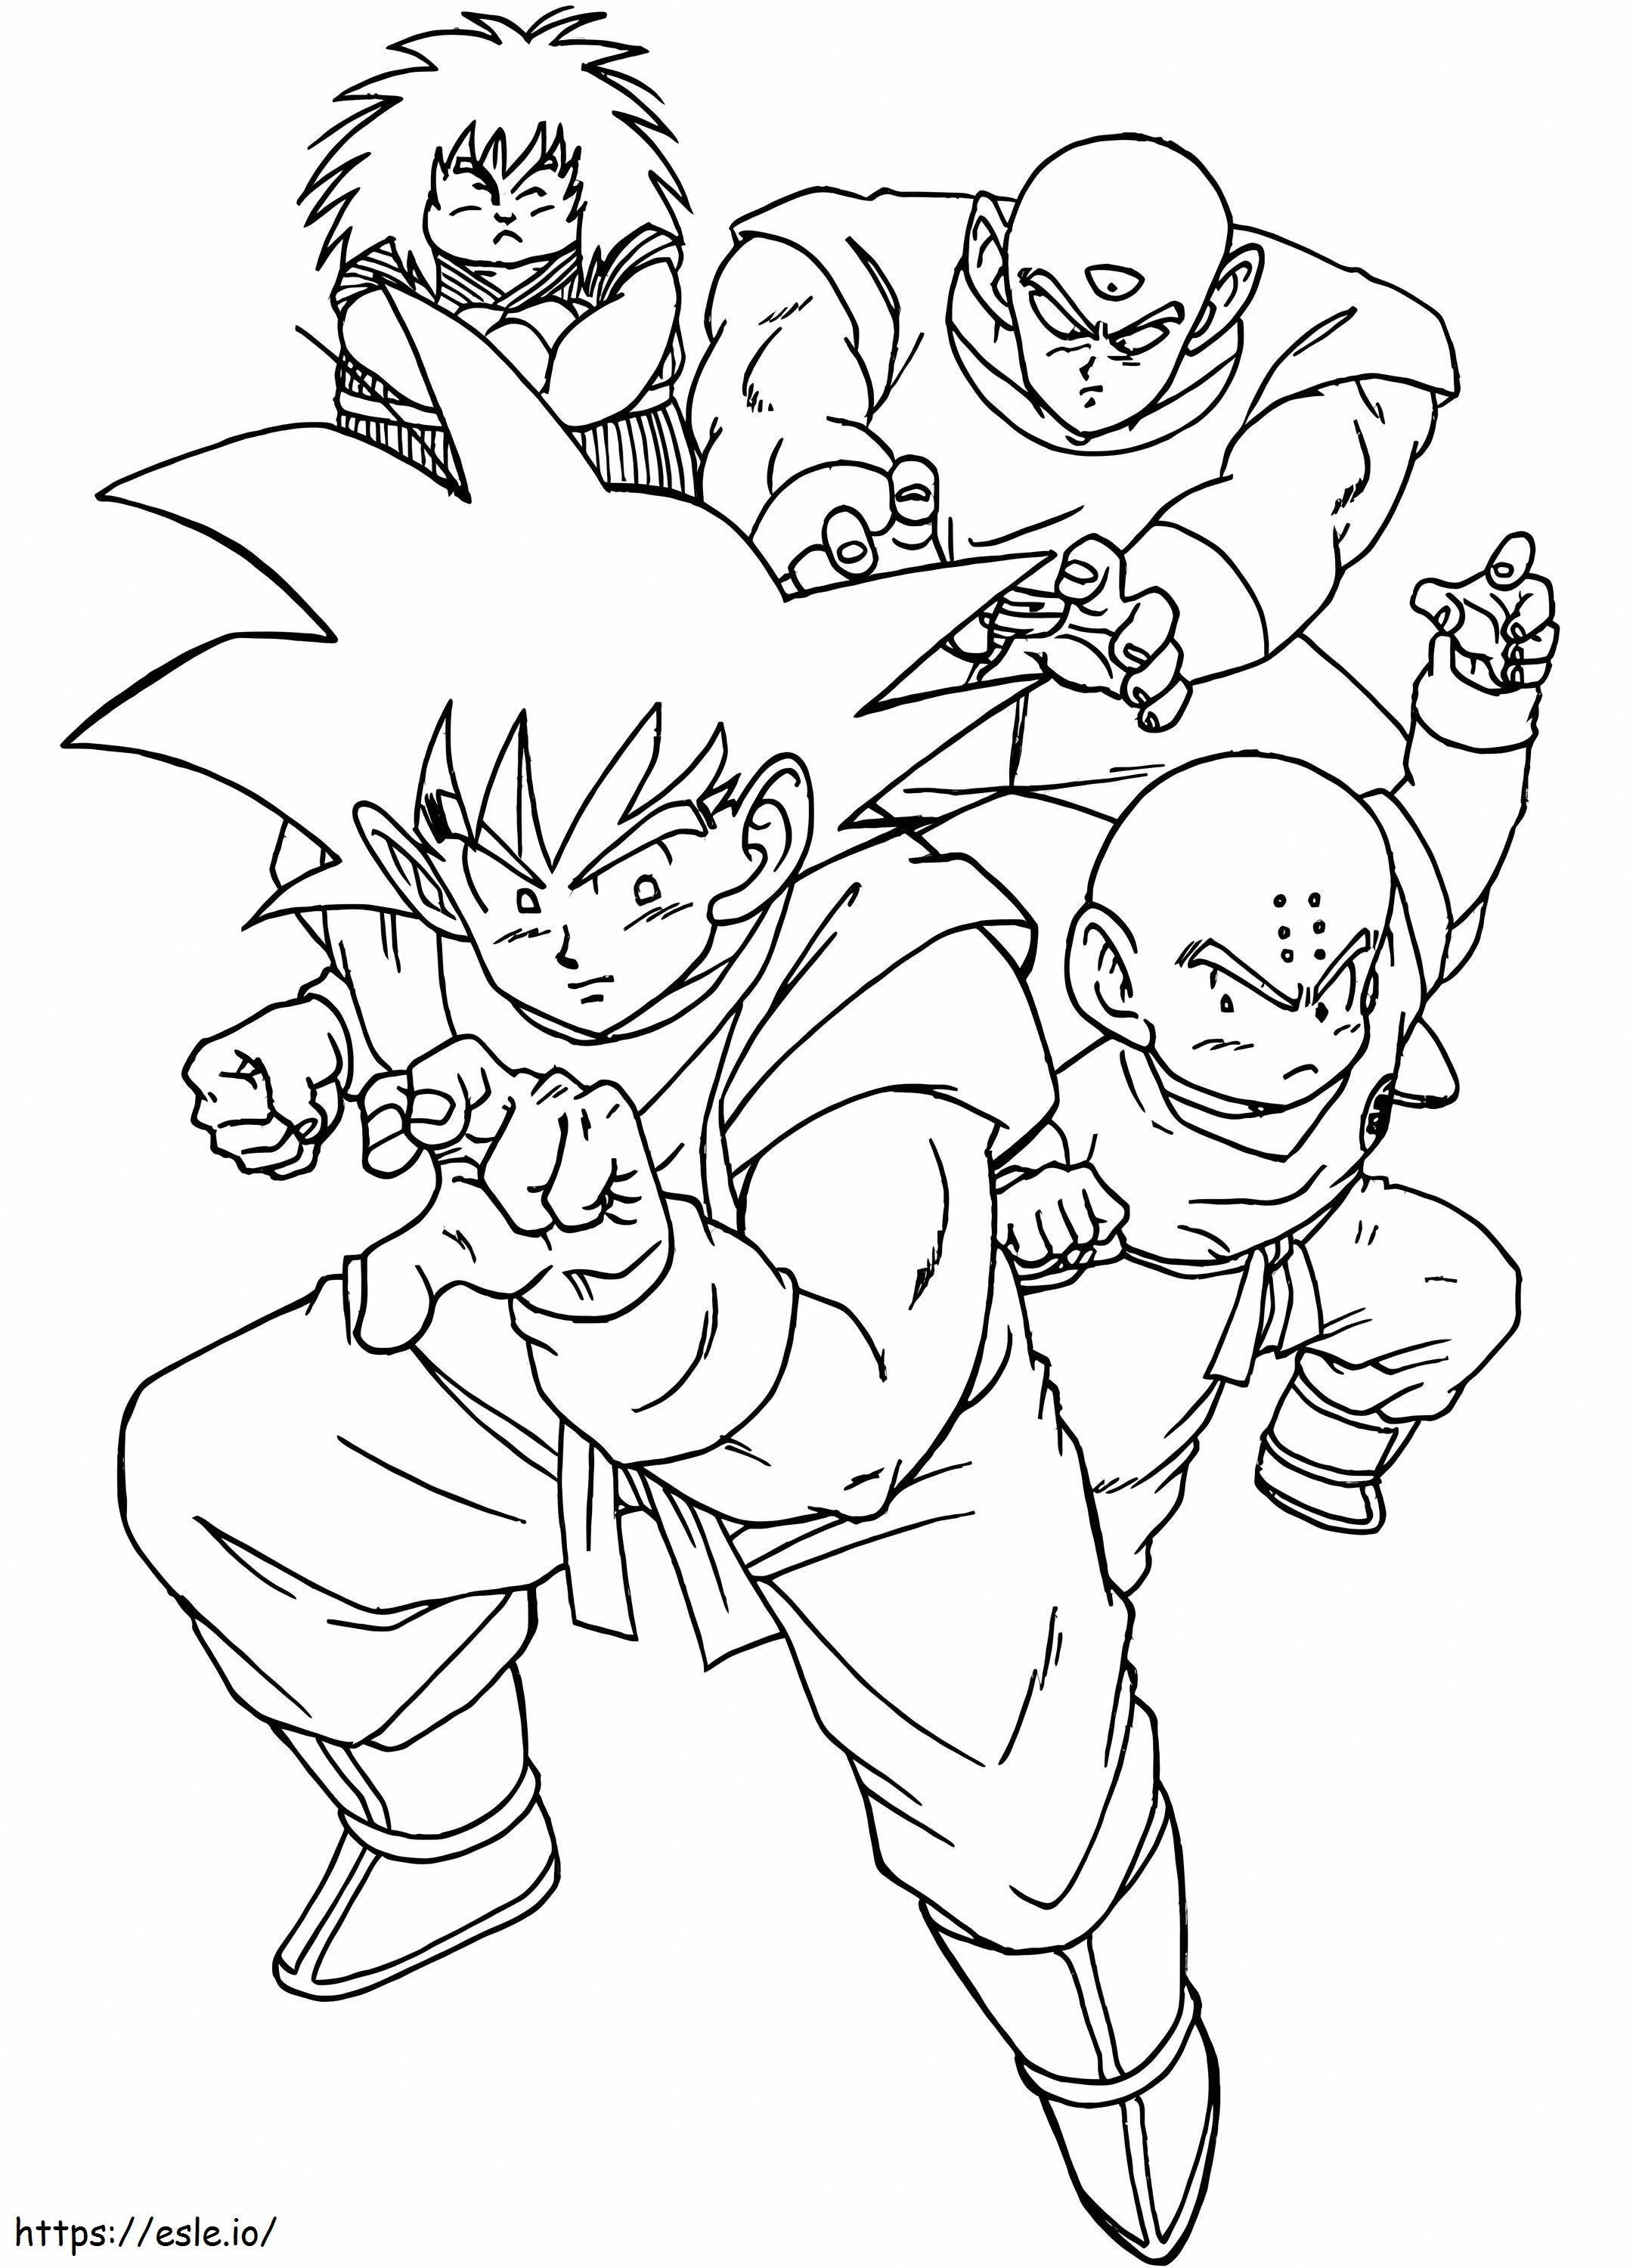 Goku ve Arkadaşları boyama